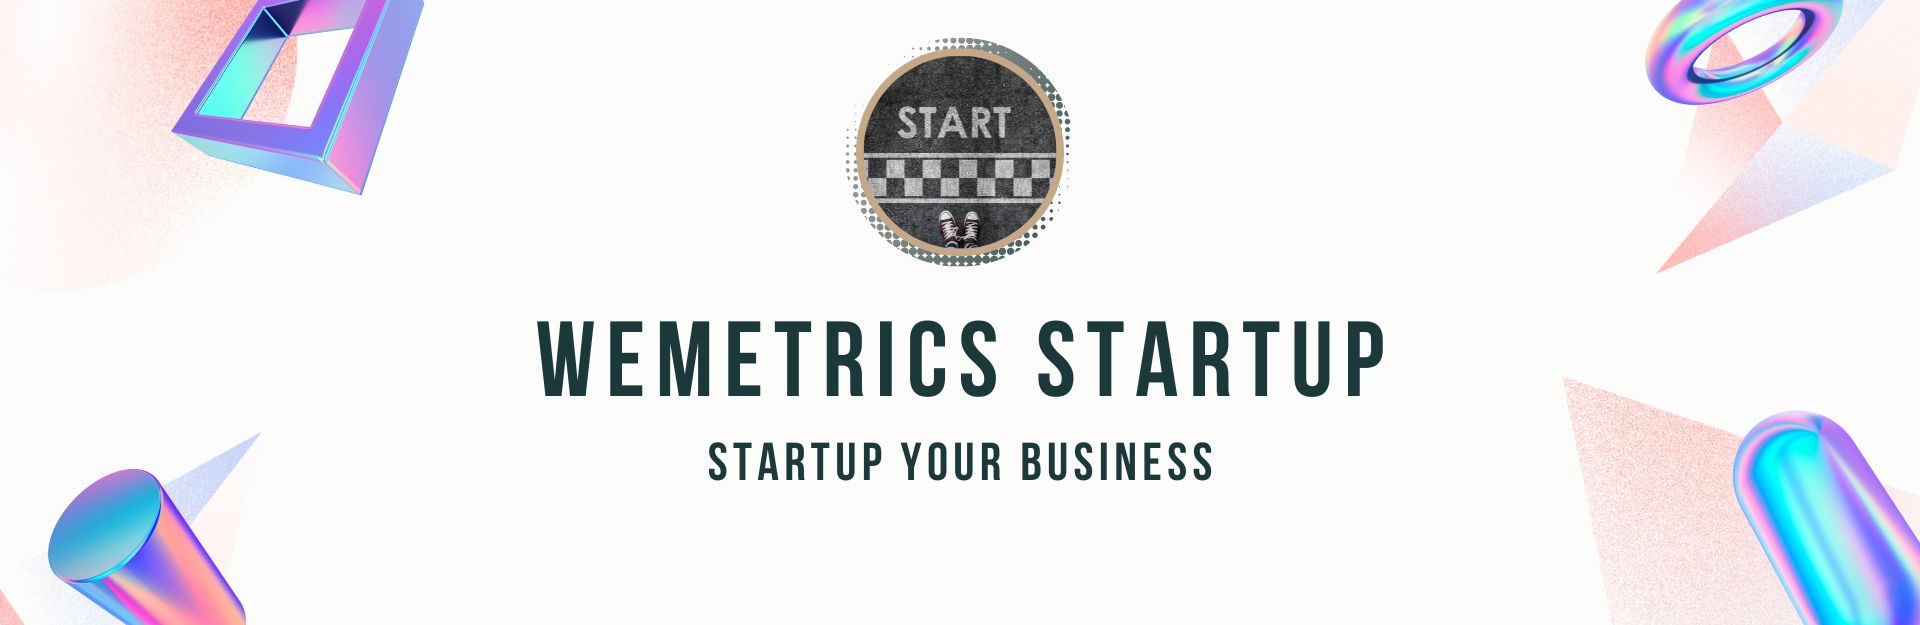 Wemetrics Startup